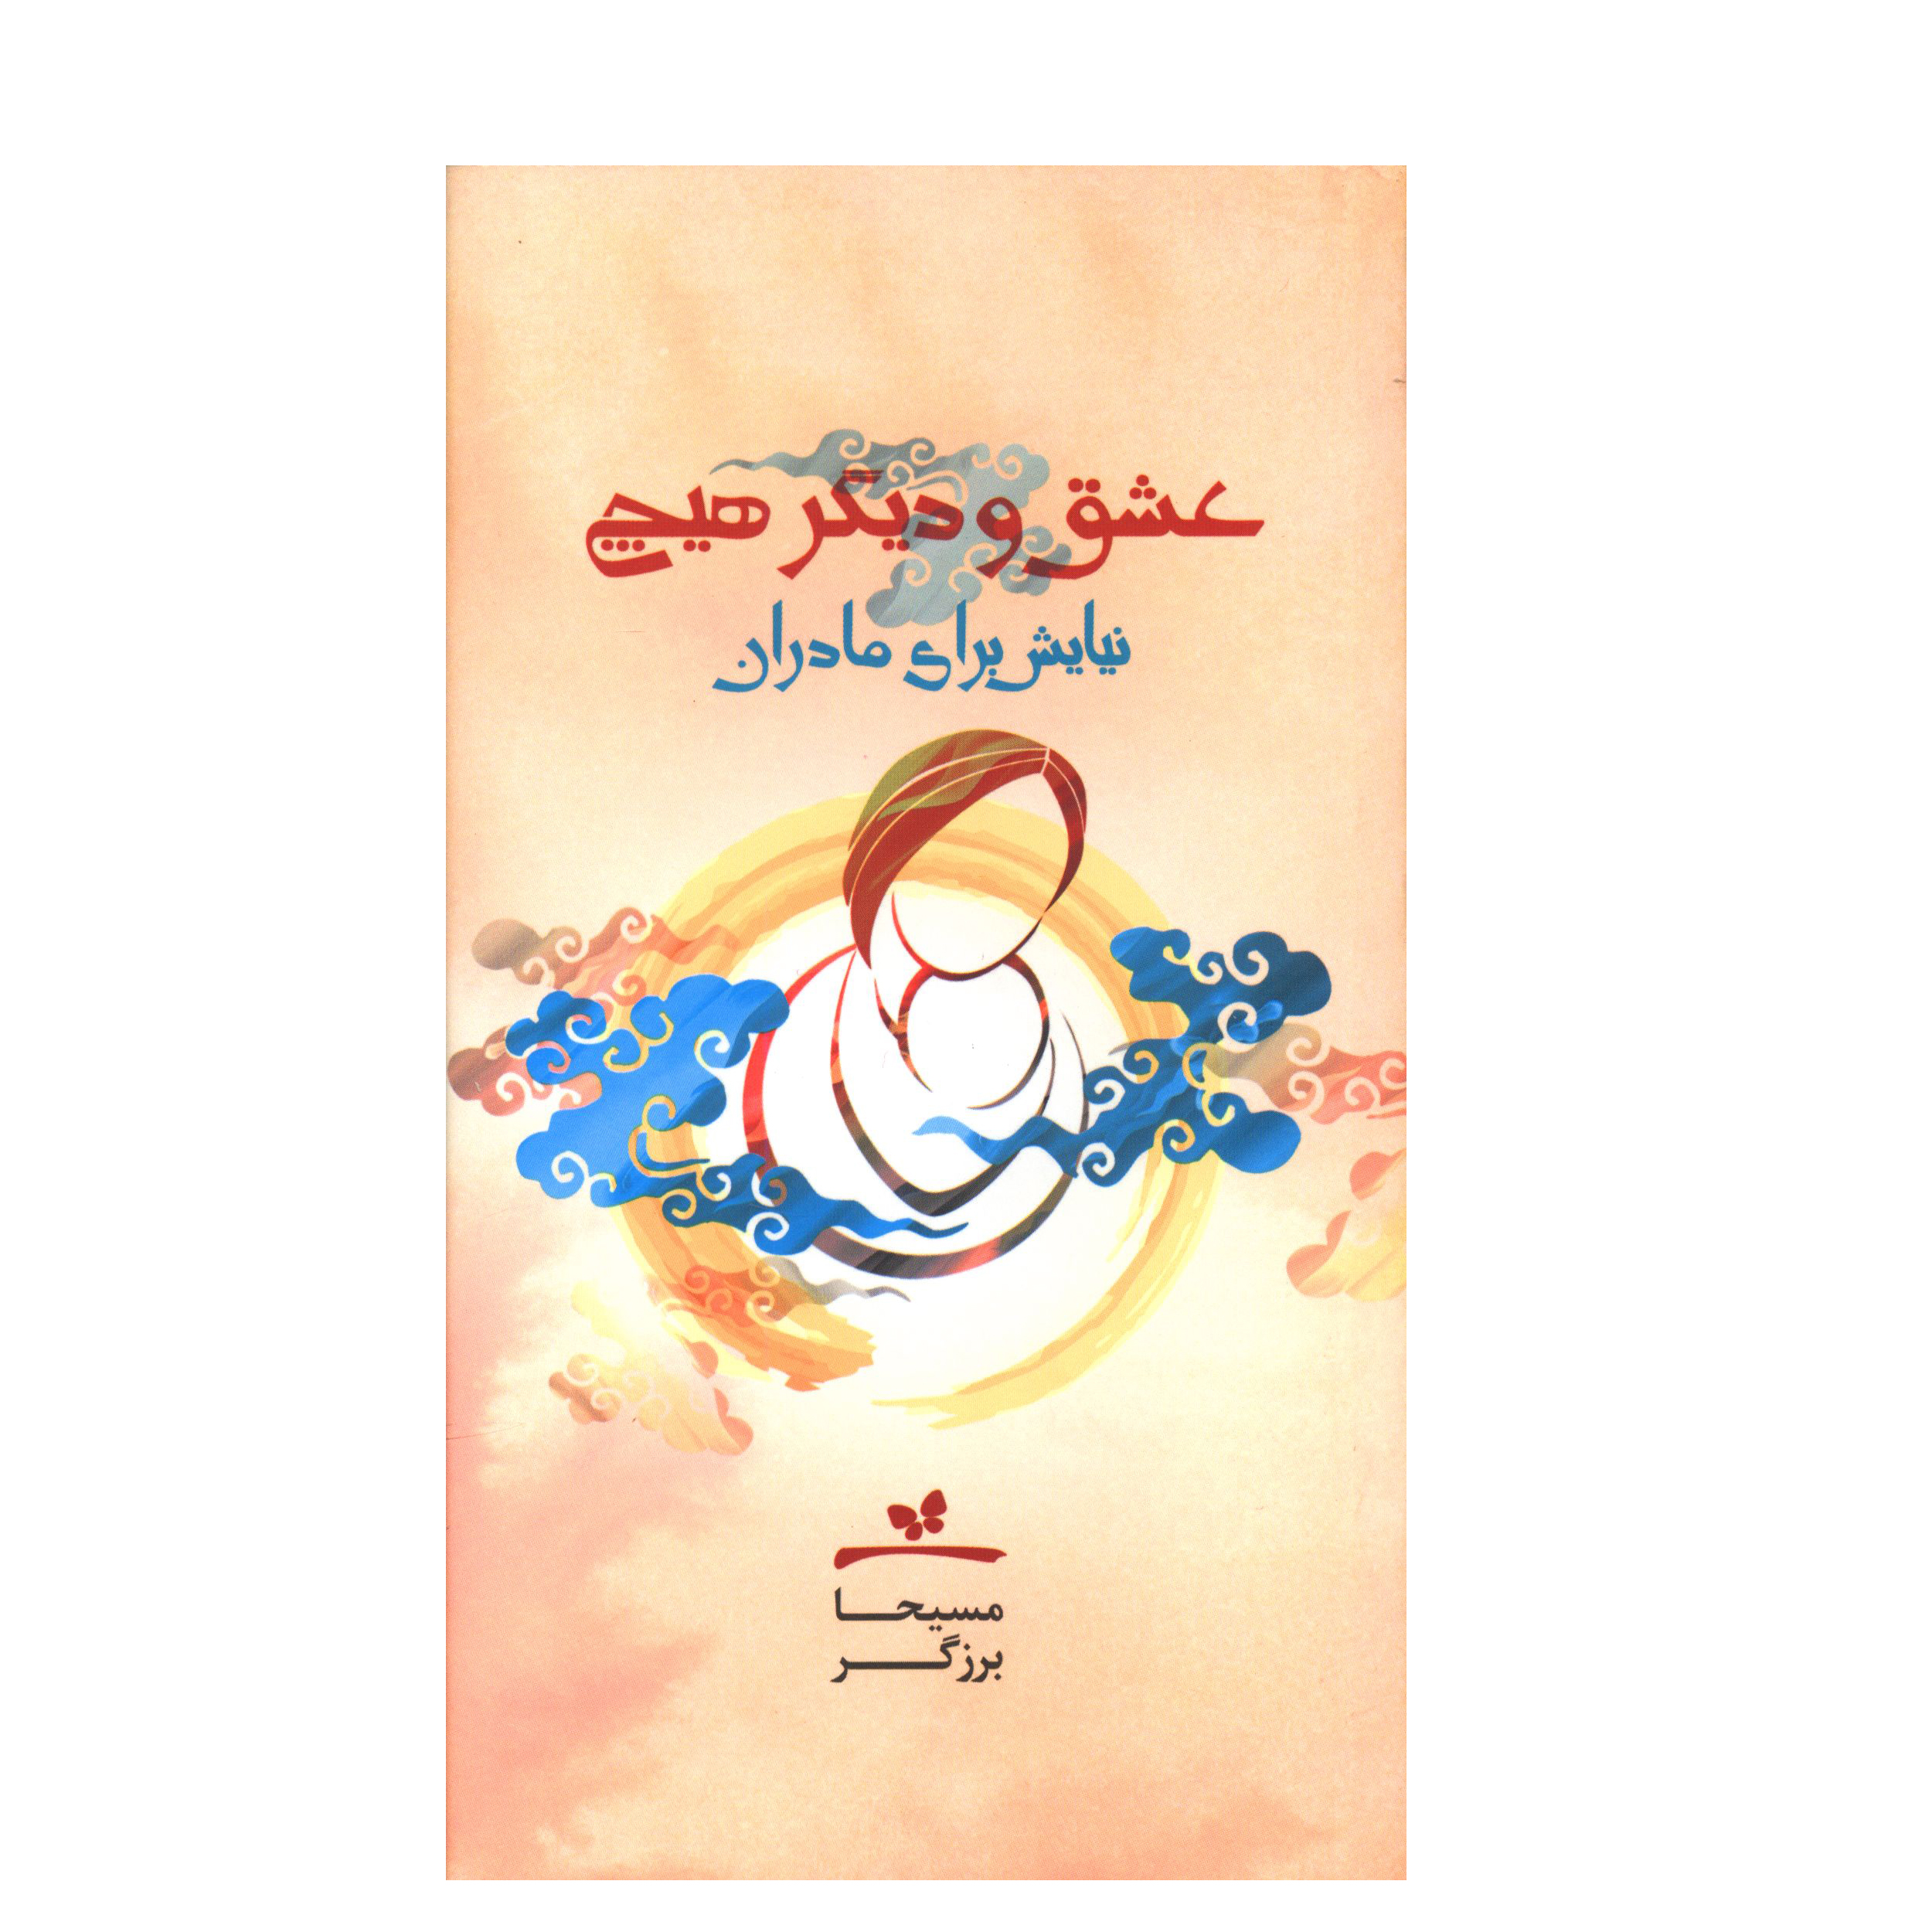 کتاب عشق و ديگر هيچ (نيايش براي مادران) اثر مسیحا برزگر انتشارات خانه معنا